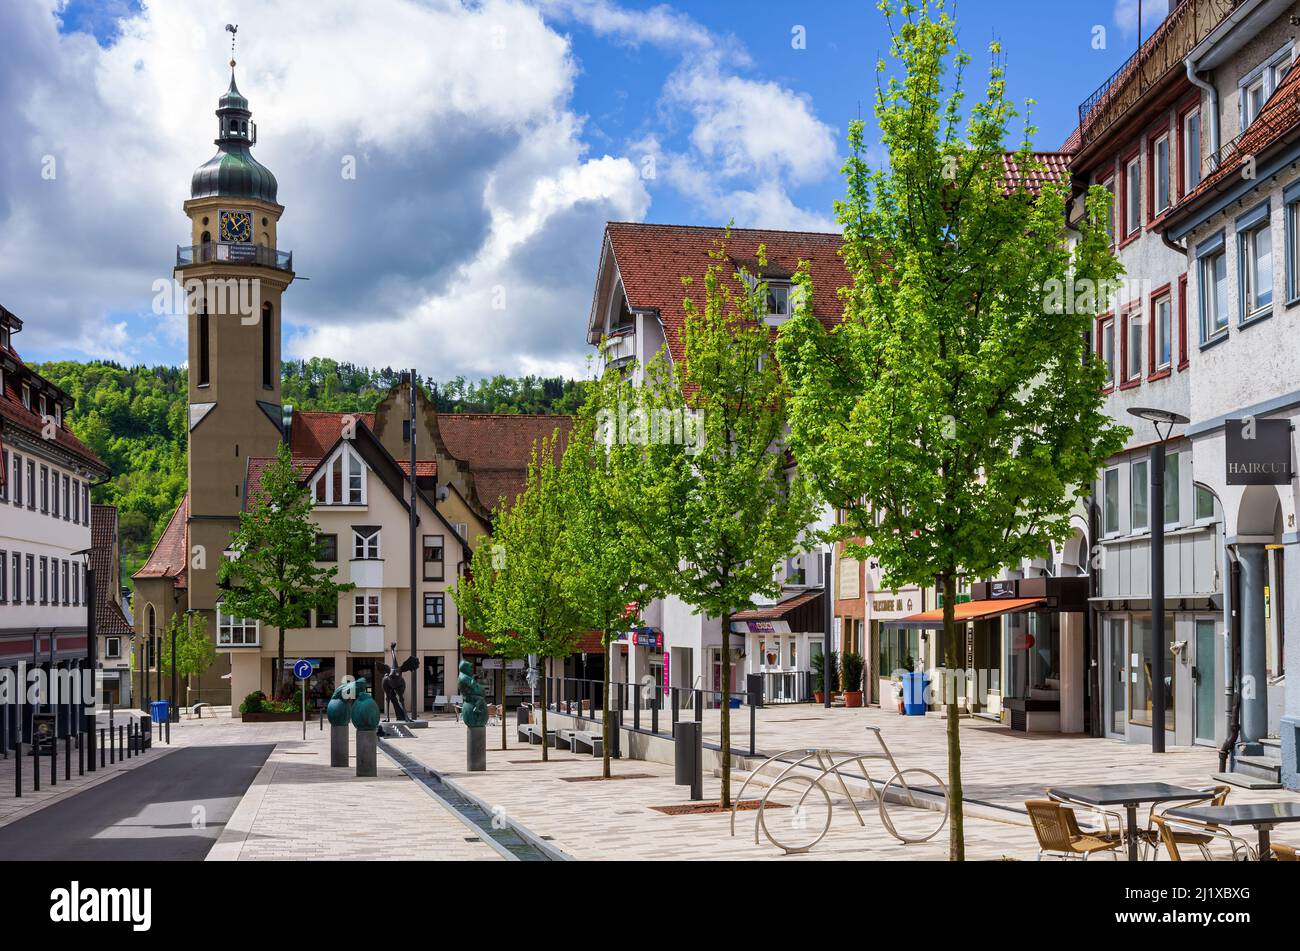 Ebingen, Albstadt, Baden-Württemberg, Germania: Scena stradale disabitata con sculture della collaborazione artistica 'Ausgrabenl'. Foto Stock